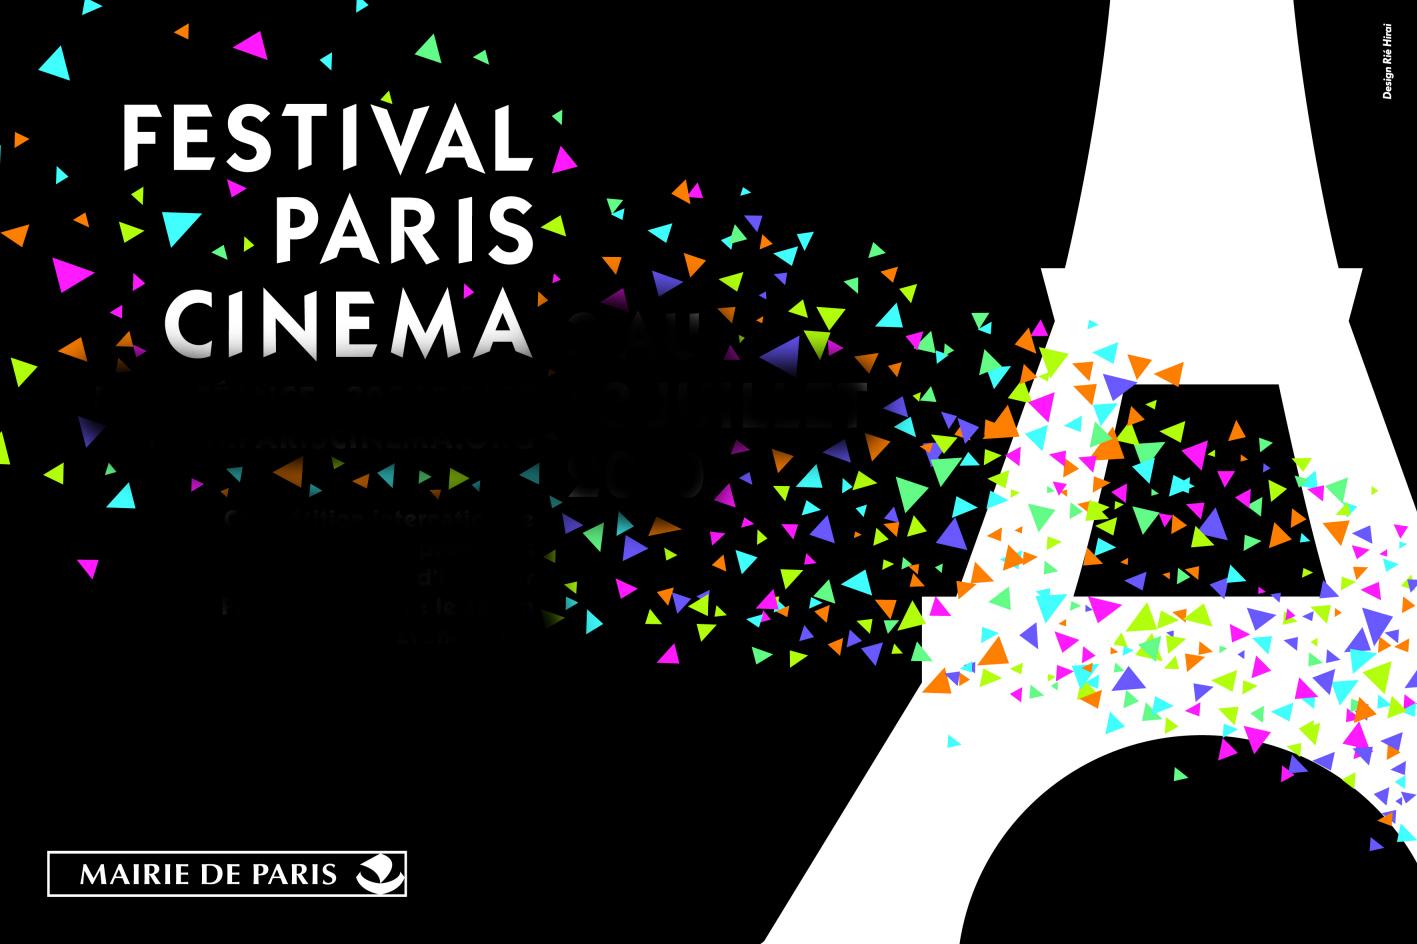 Le Festival Paris Cinéma 2012 dévoile sa programmation